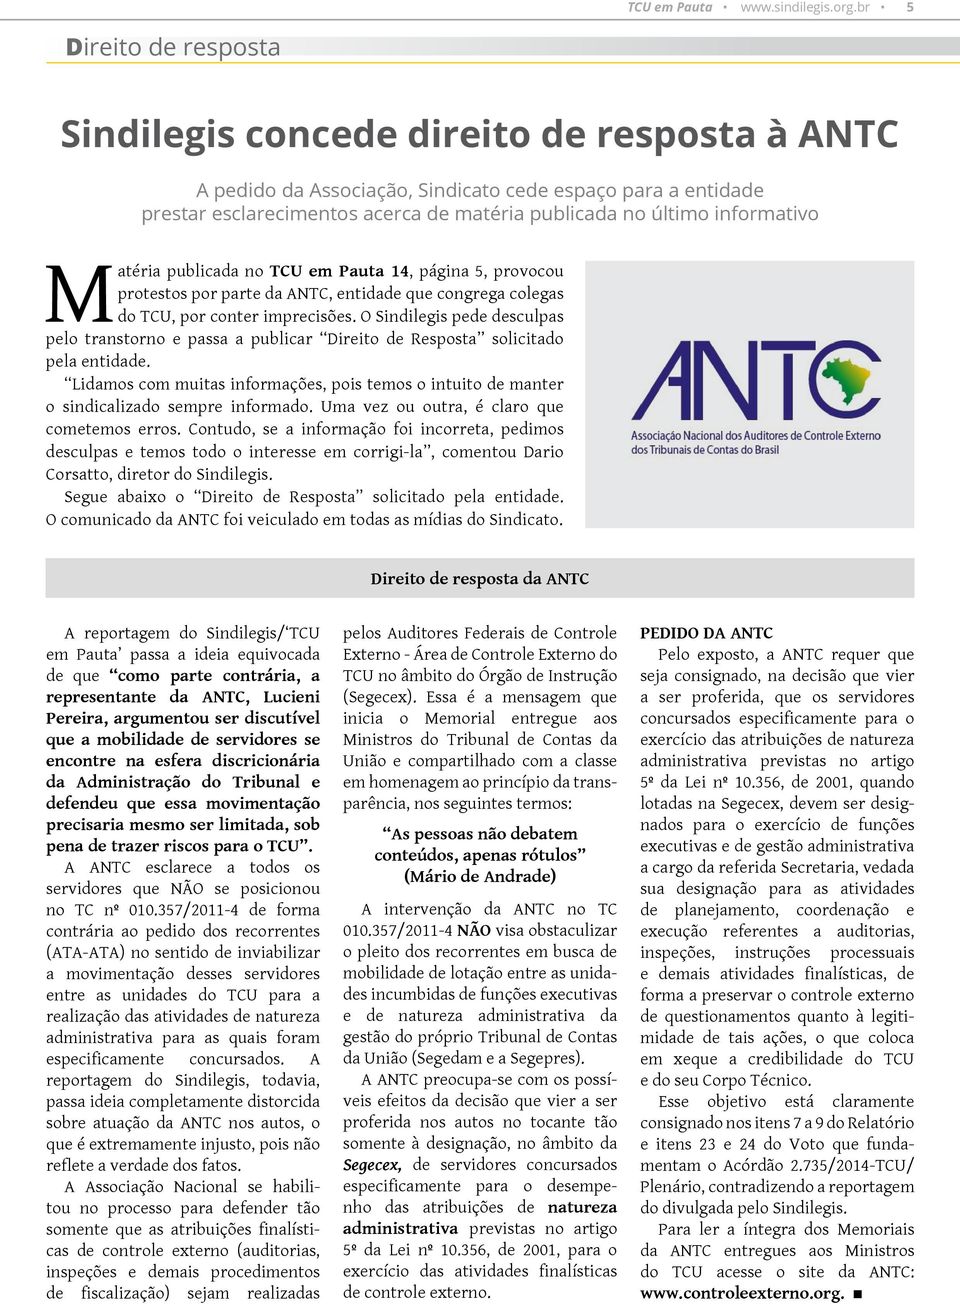 informativo Matéria publicada no TCU em Pauta 14, página 5, provocou protestos por parte da ANTC, entidade que congrega colegas do TCU, por conter imprecisões.